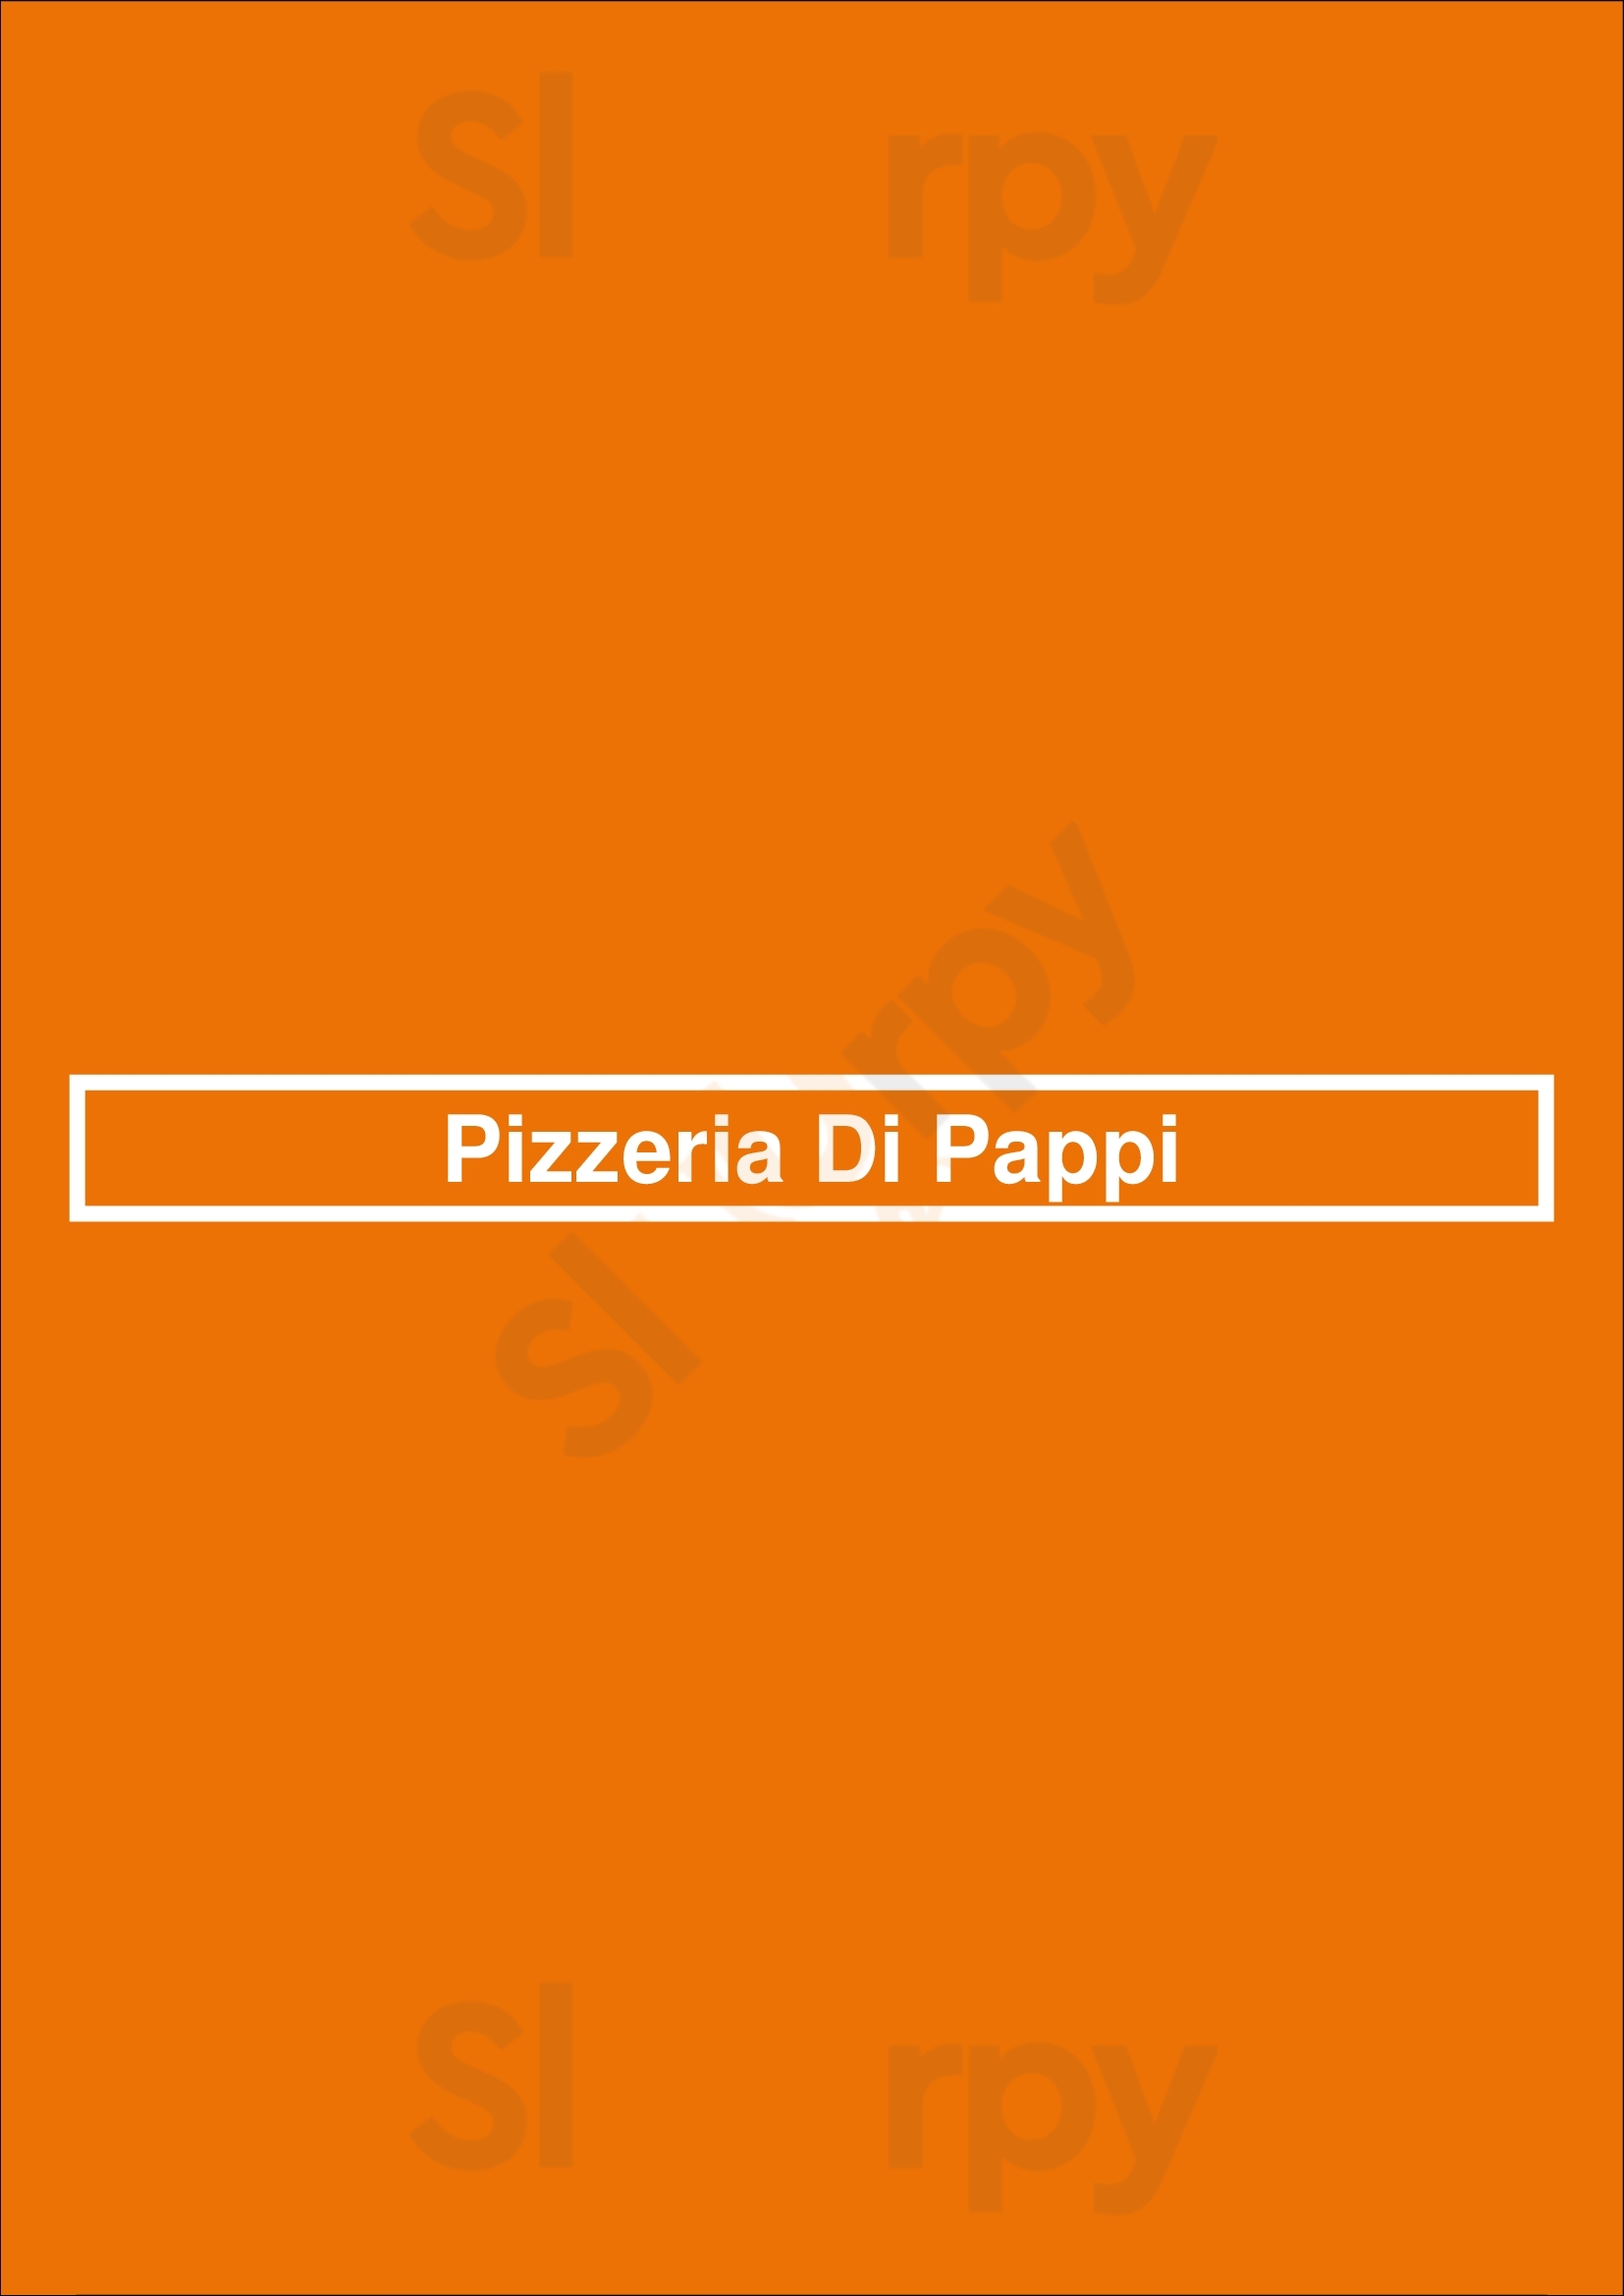 Pizzeria Di Pappi Esposende Menu - 1